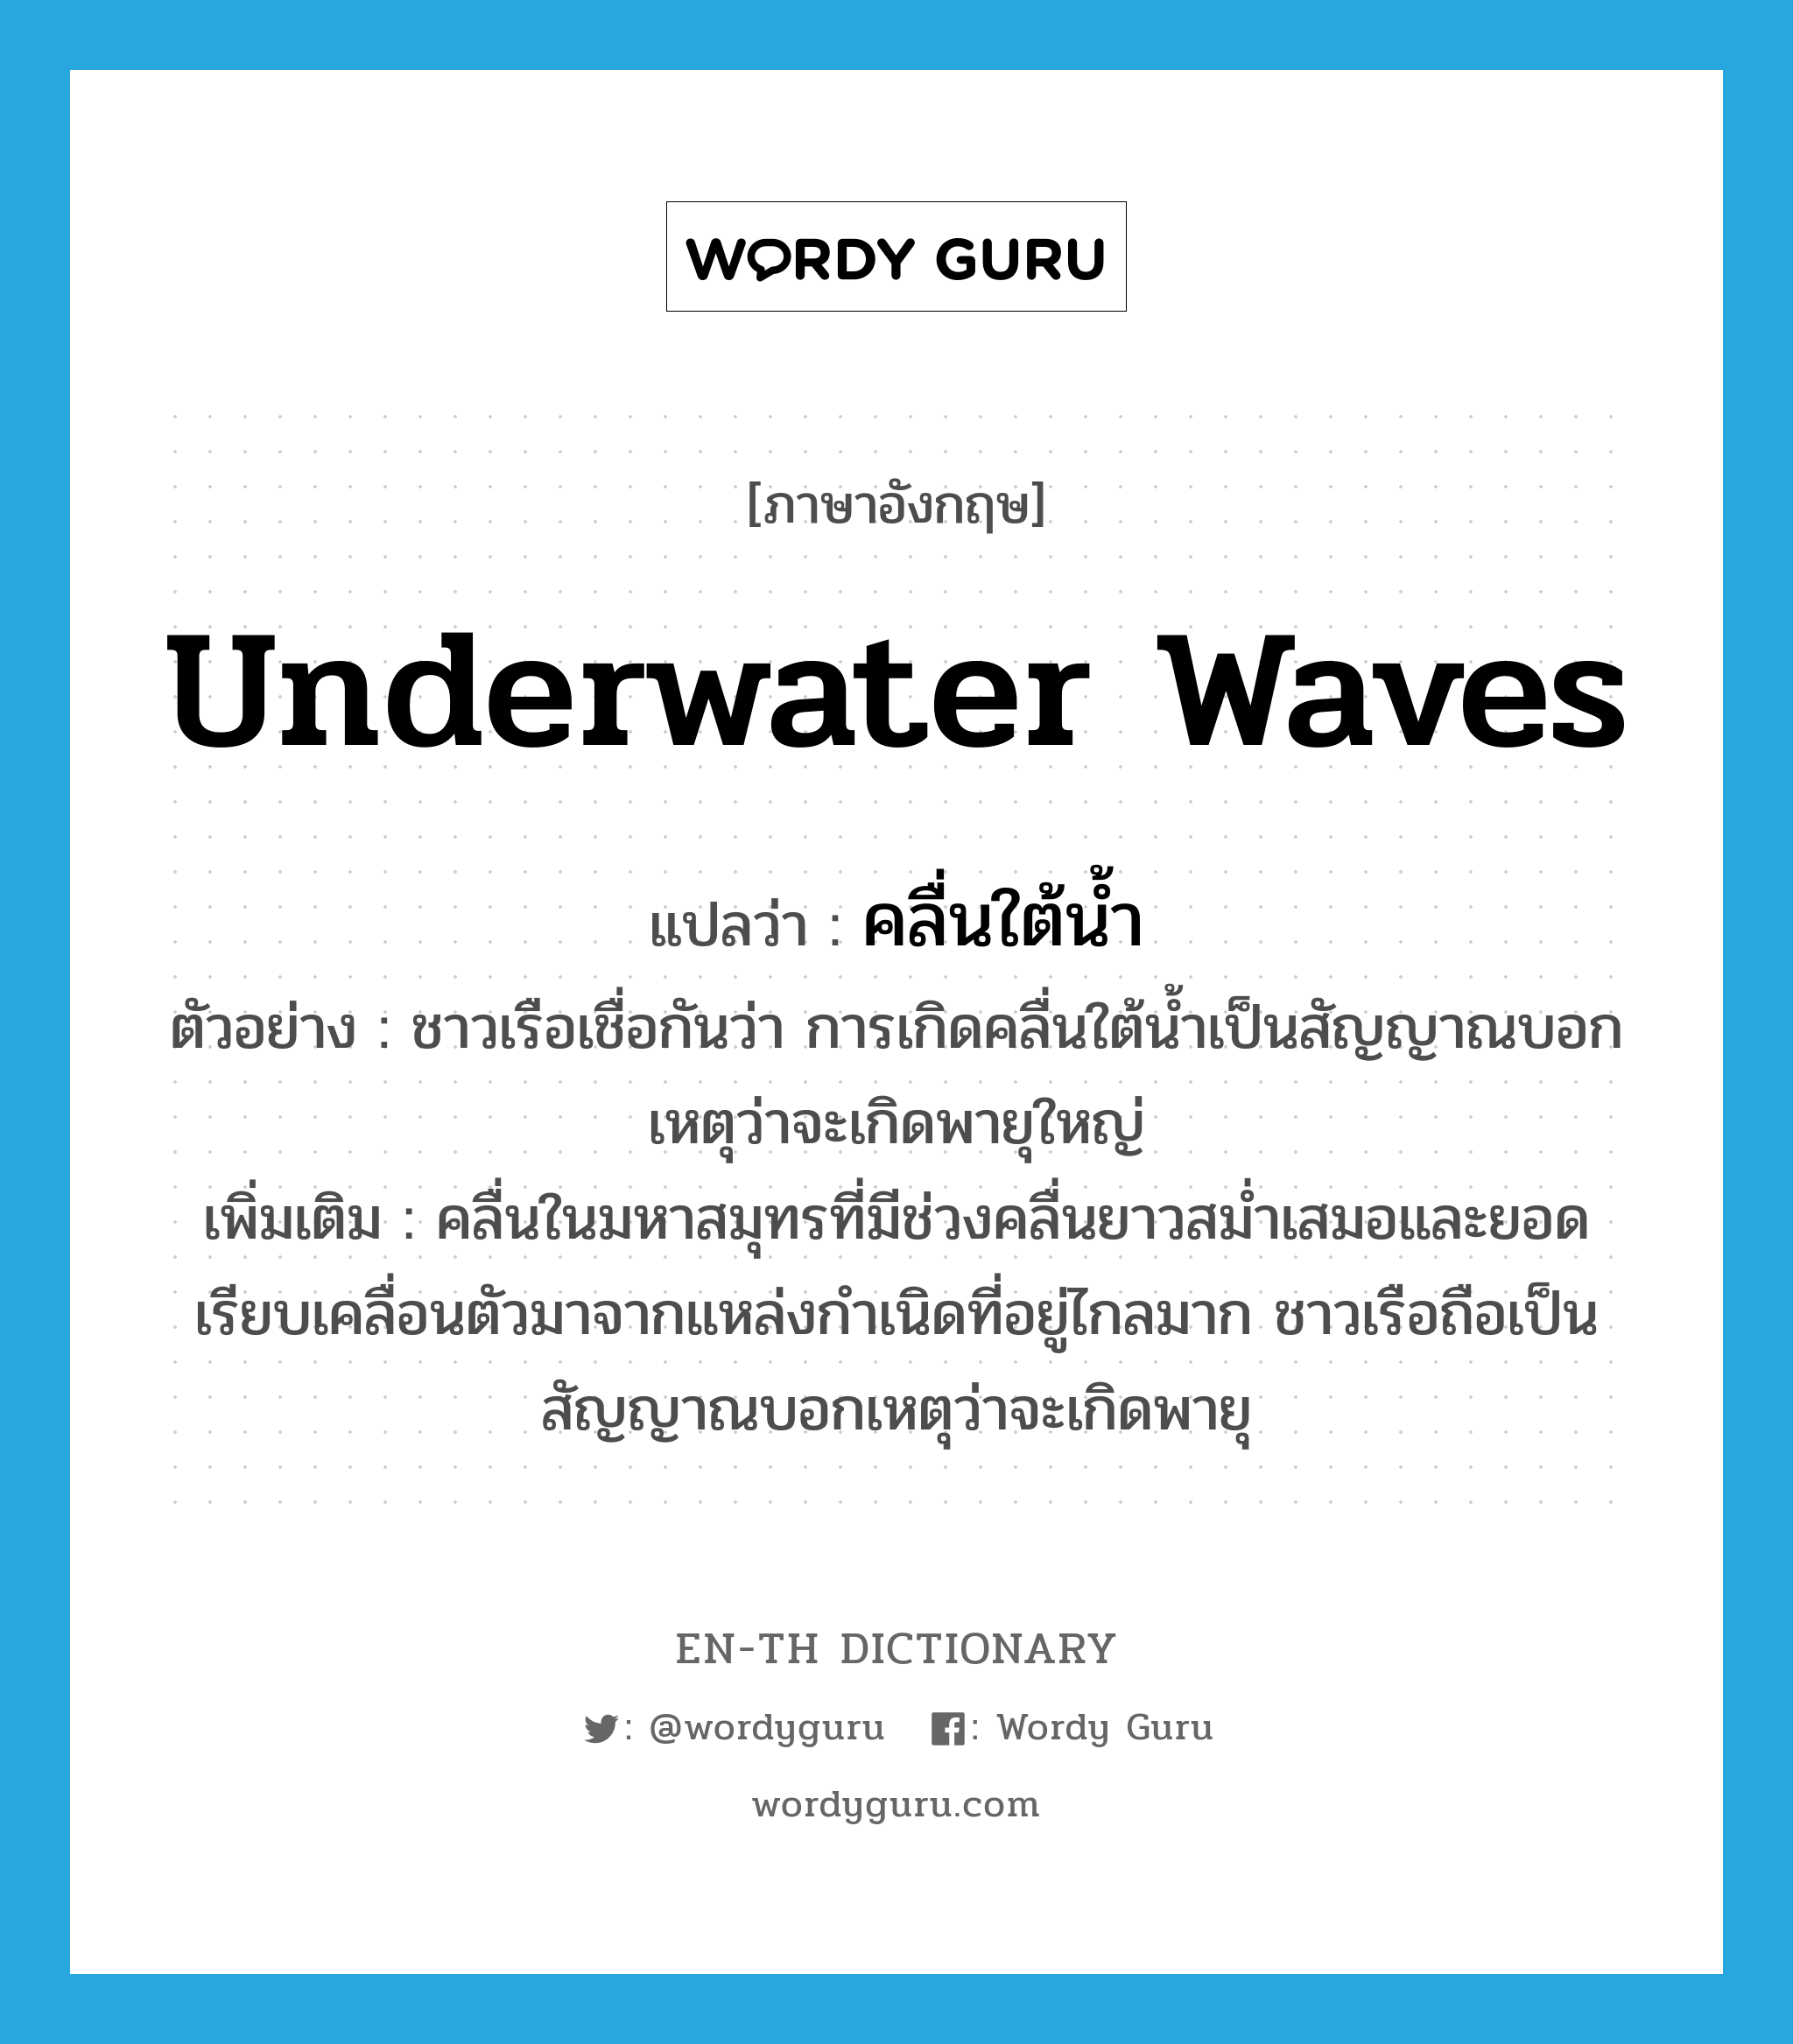 underwater waves แปลว่า?, คำศัพท์ภาษาอังกฤษ underwater waves แปลว่า คลื่นใต้น้ำ ประเภท N ตัวอย่าง ชาวเรือเชื่อกันว่า การเกิดคลื่นใต้น้ำเป็นสัญญาณบอกเหตุว่าจะเกิดพายุใหญ่ เพิ่มเติม คลื่นในมหาสมุทรที่มีช่วงคลื่นยาวสม่ำเสมอและยอดเรียบเคลื่อนตัวมาจากแหล่งกำเนิดที่อยู่ไกลมาก ชาวเรือถือเป็นสัญญาณบอกเหตุว่าจะเกิดพายุ หมวด N